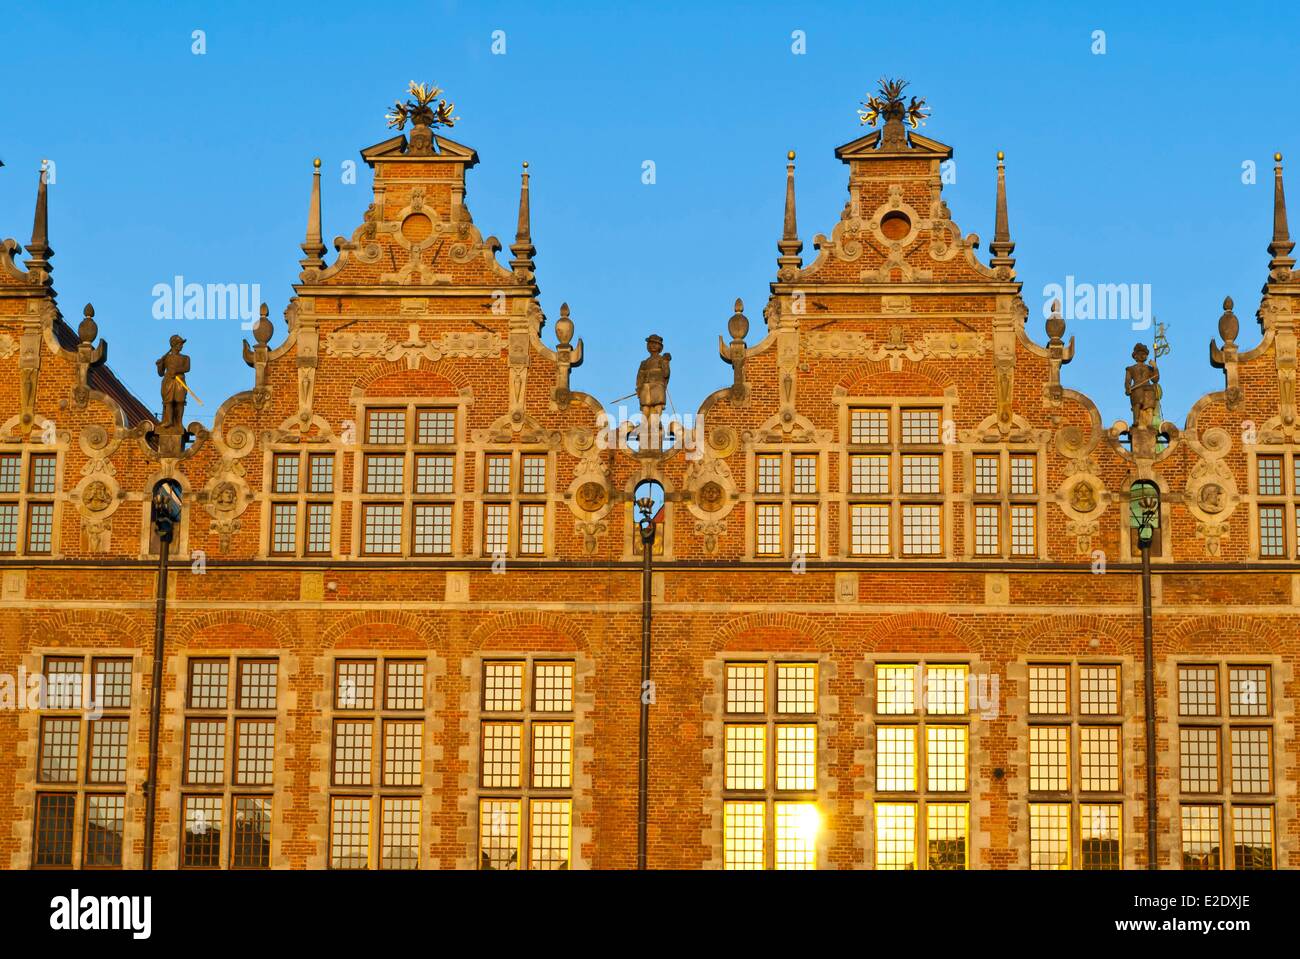 Polens östlichen Pommern Danzig riesiges Waffenarsenal eleganten Gebäude im Stil der flämischen Renaissance zwischen 1600 und 1605 erbaut Stockfoto